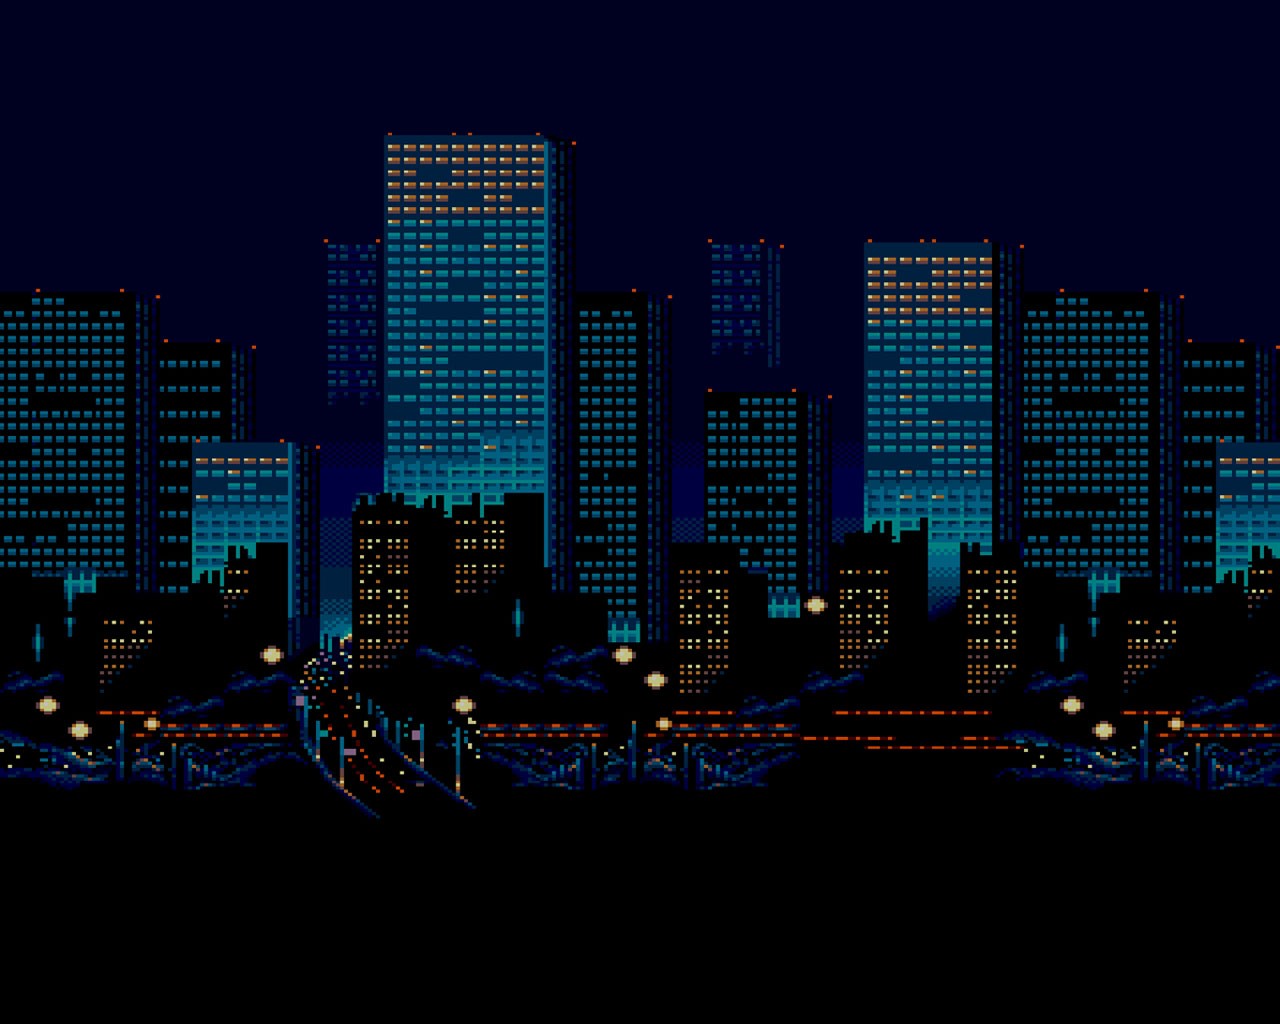 Night City lights PPT Backgrounds